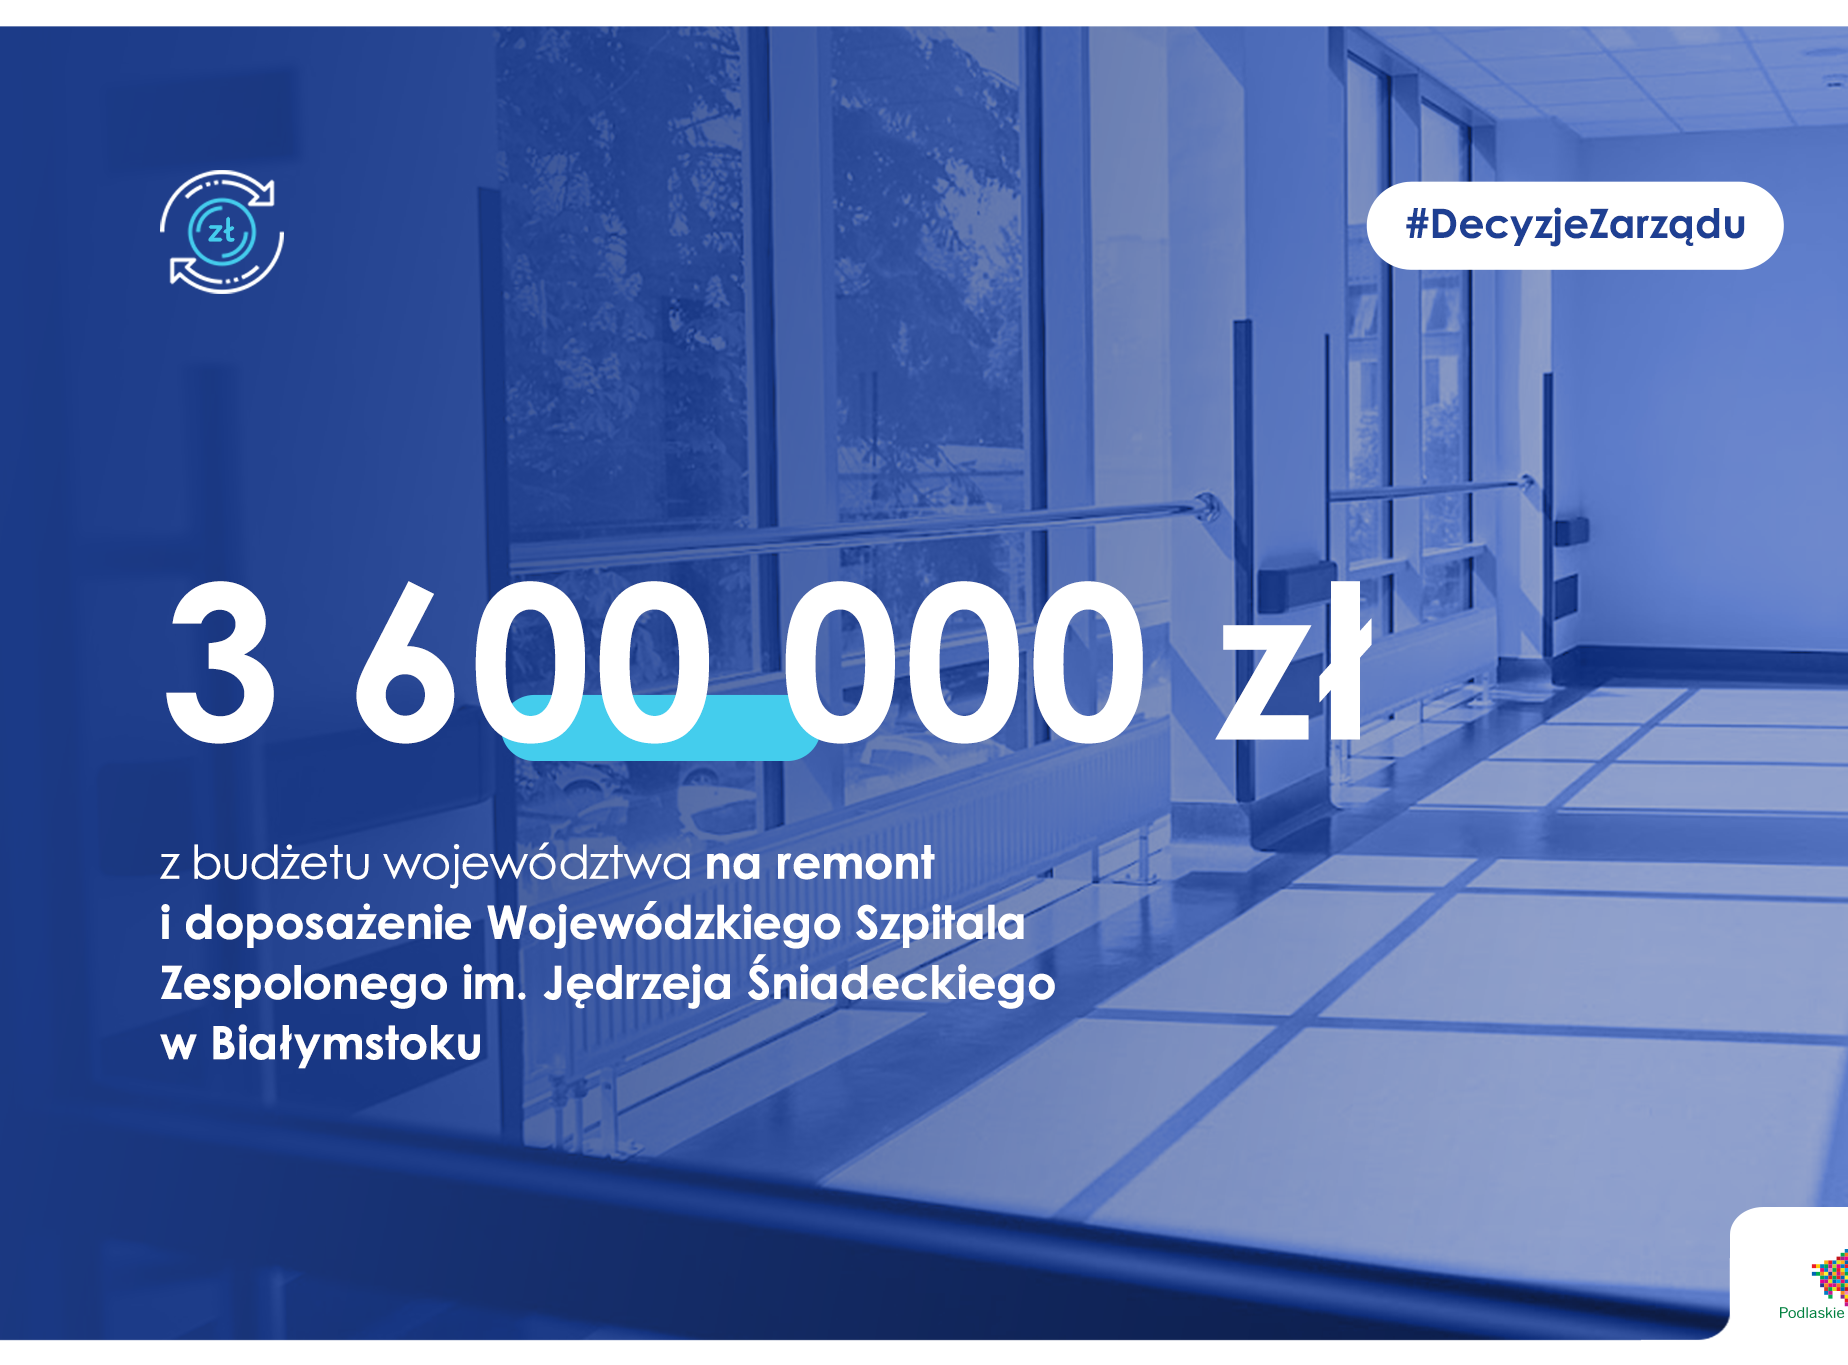 zdjęcie szpitala z napisem: 3,6 mln zł dla szpitala wojewódzkiego w Białymstoku